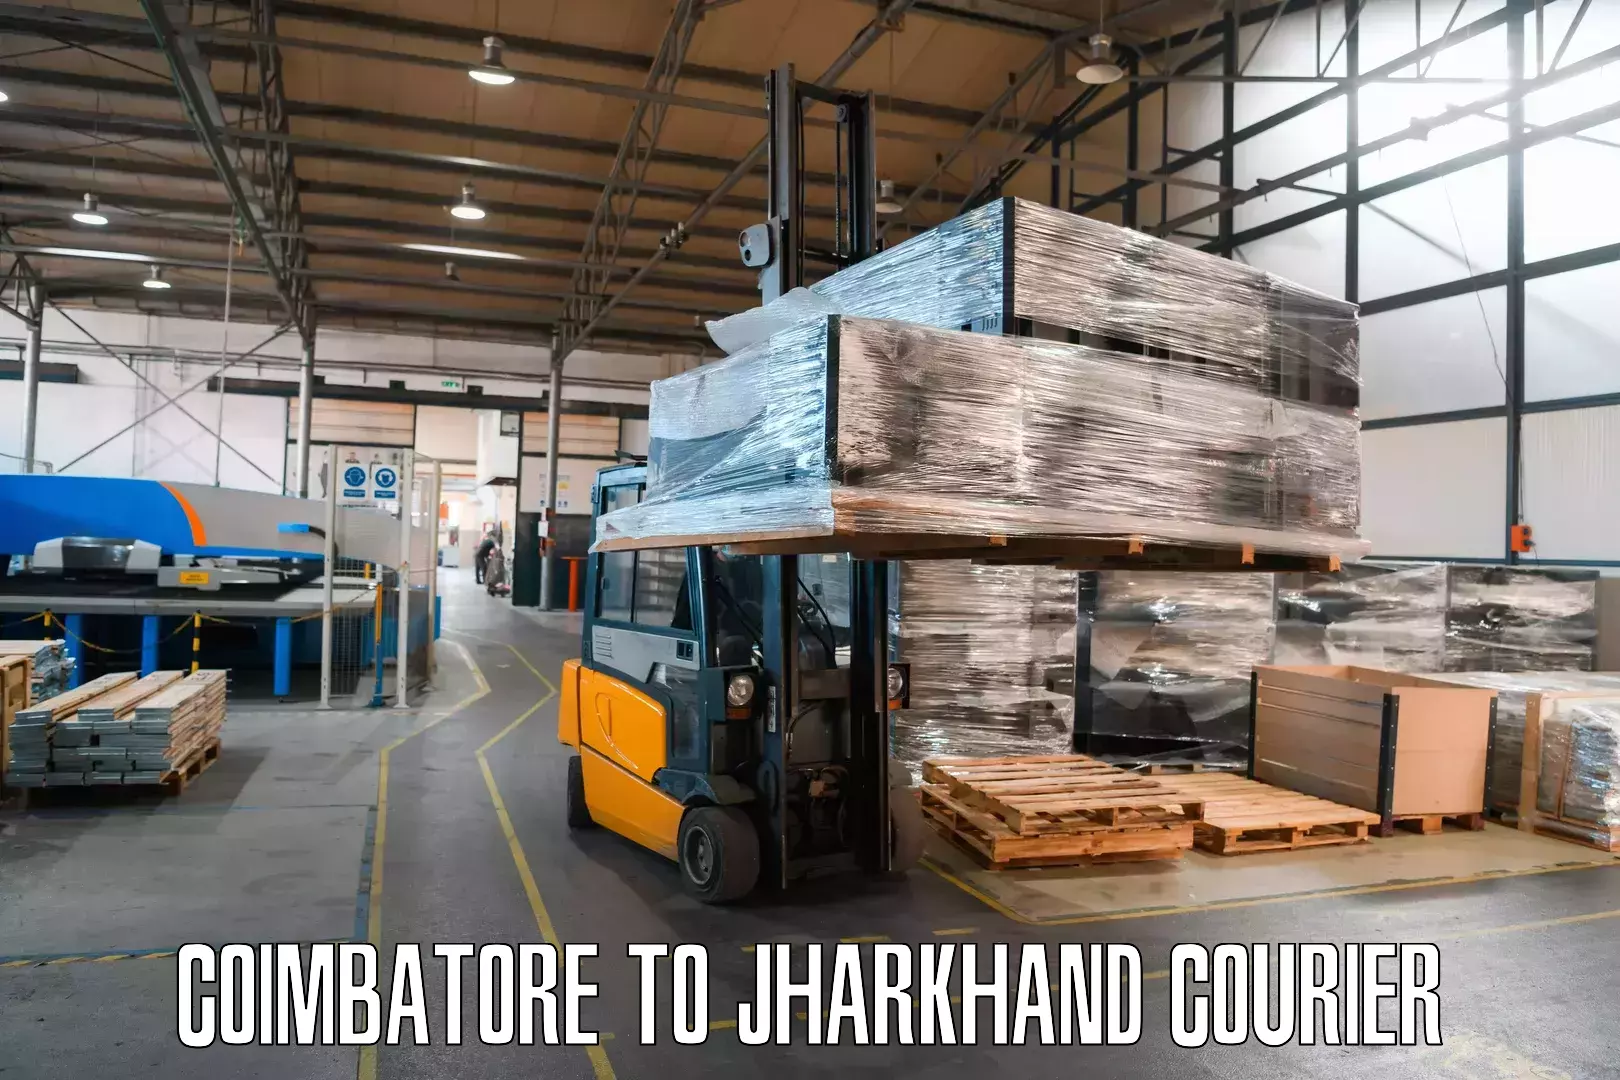 Cargo delivery service Coimbatore to Godda